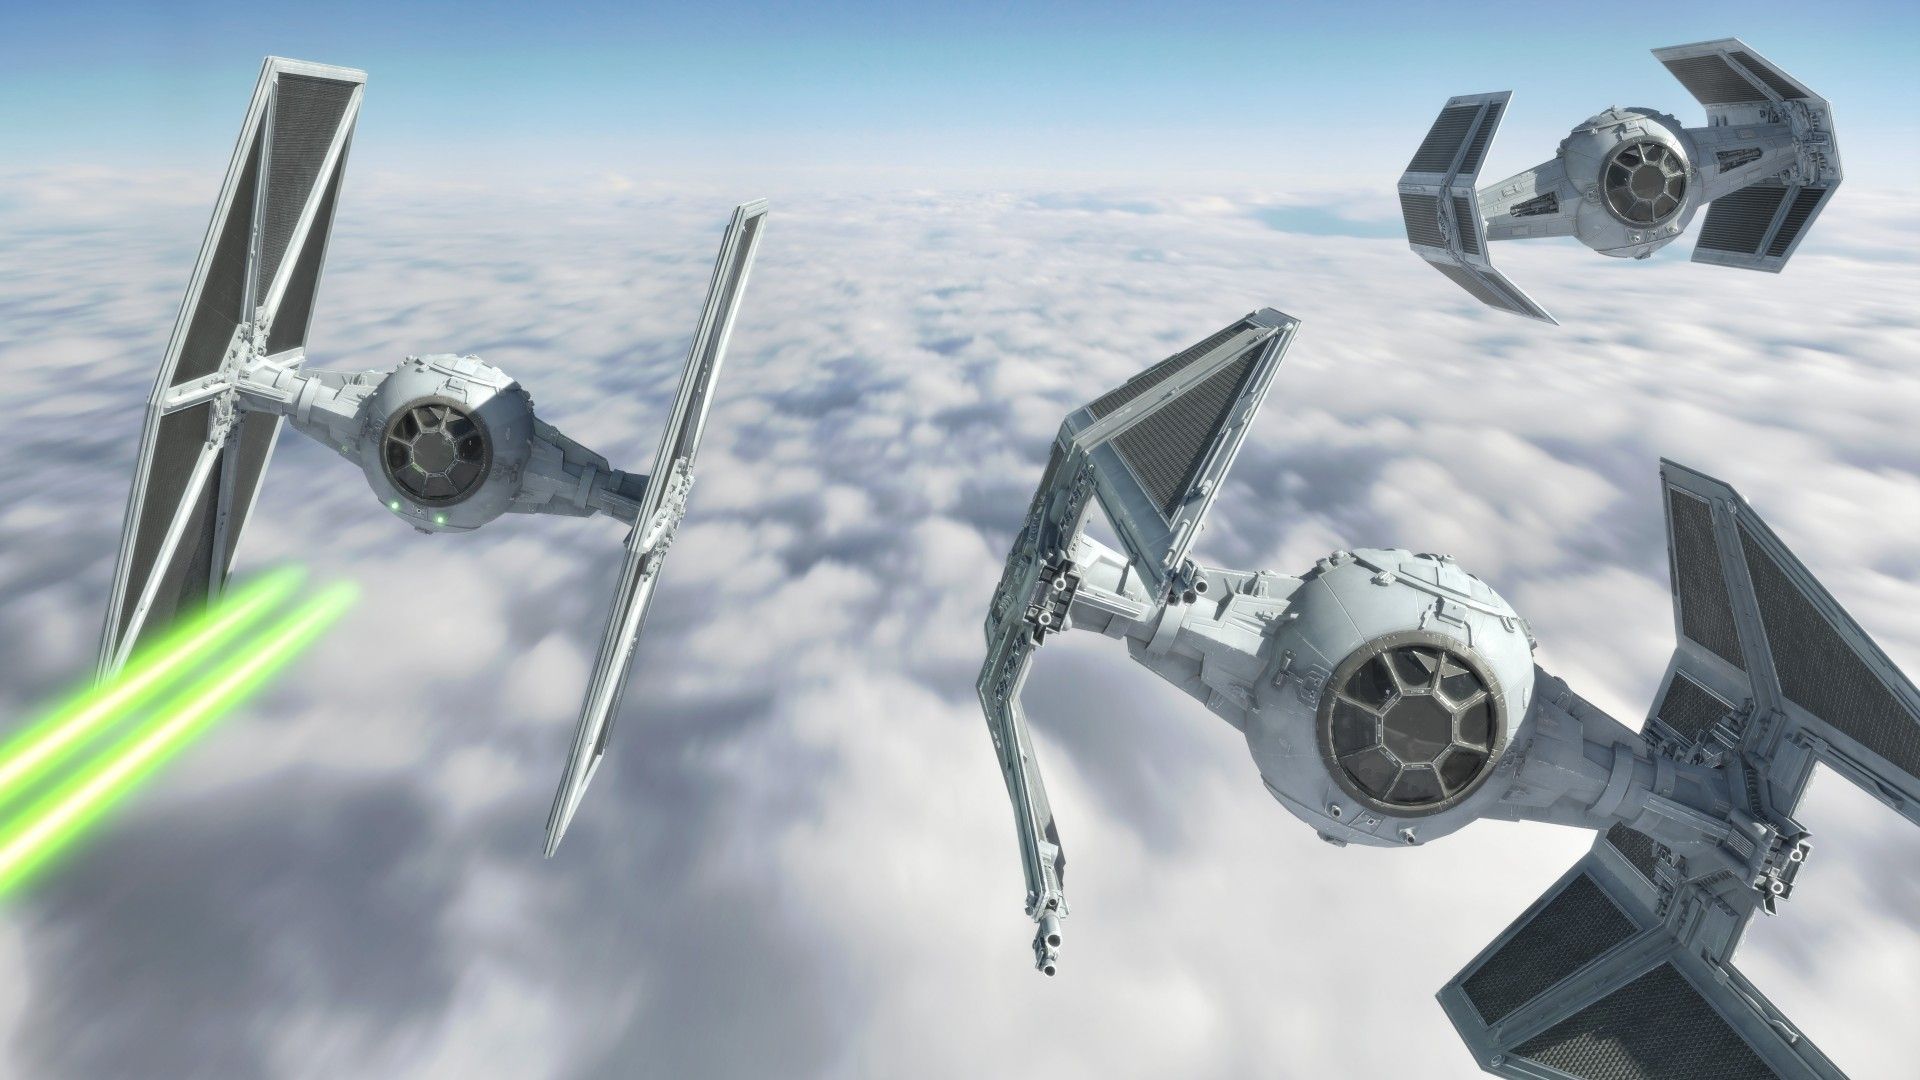 Star Wars #starwars tie fighter Interceptor. Star wars ships, Star wars novels, Star wars galactic empire